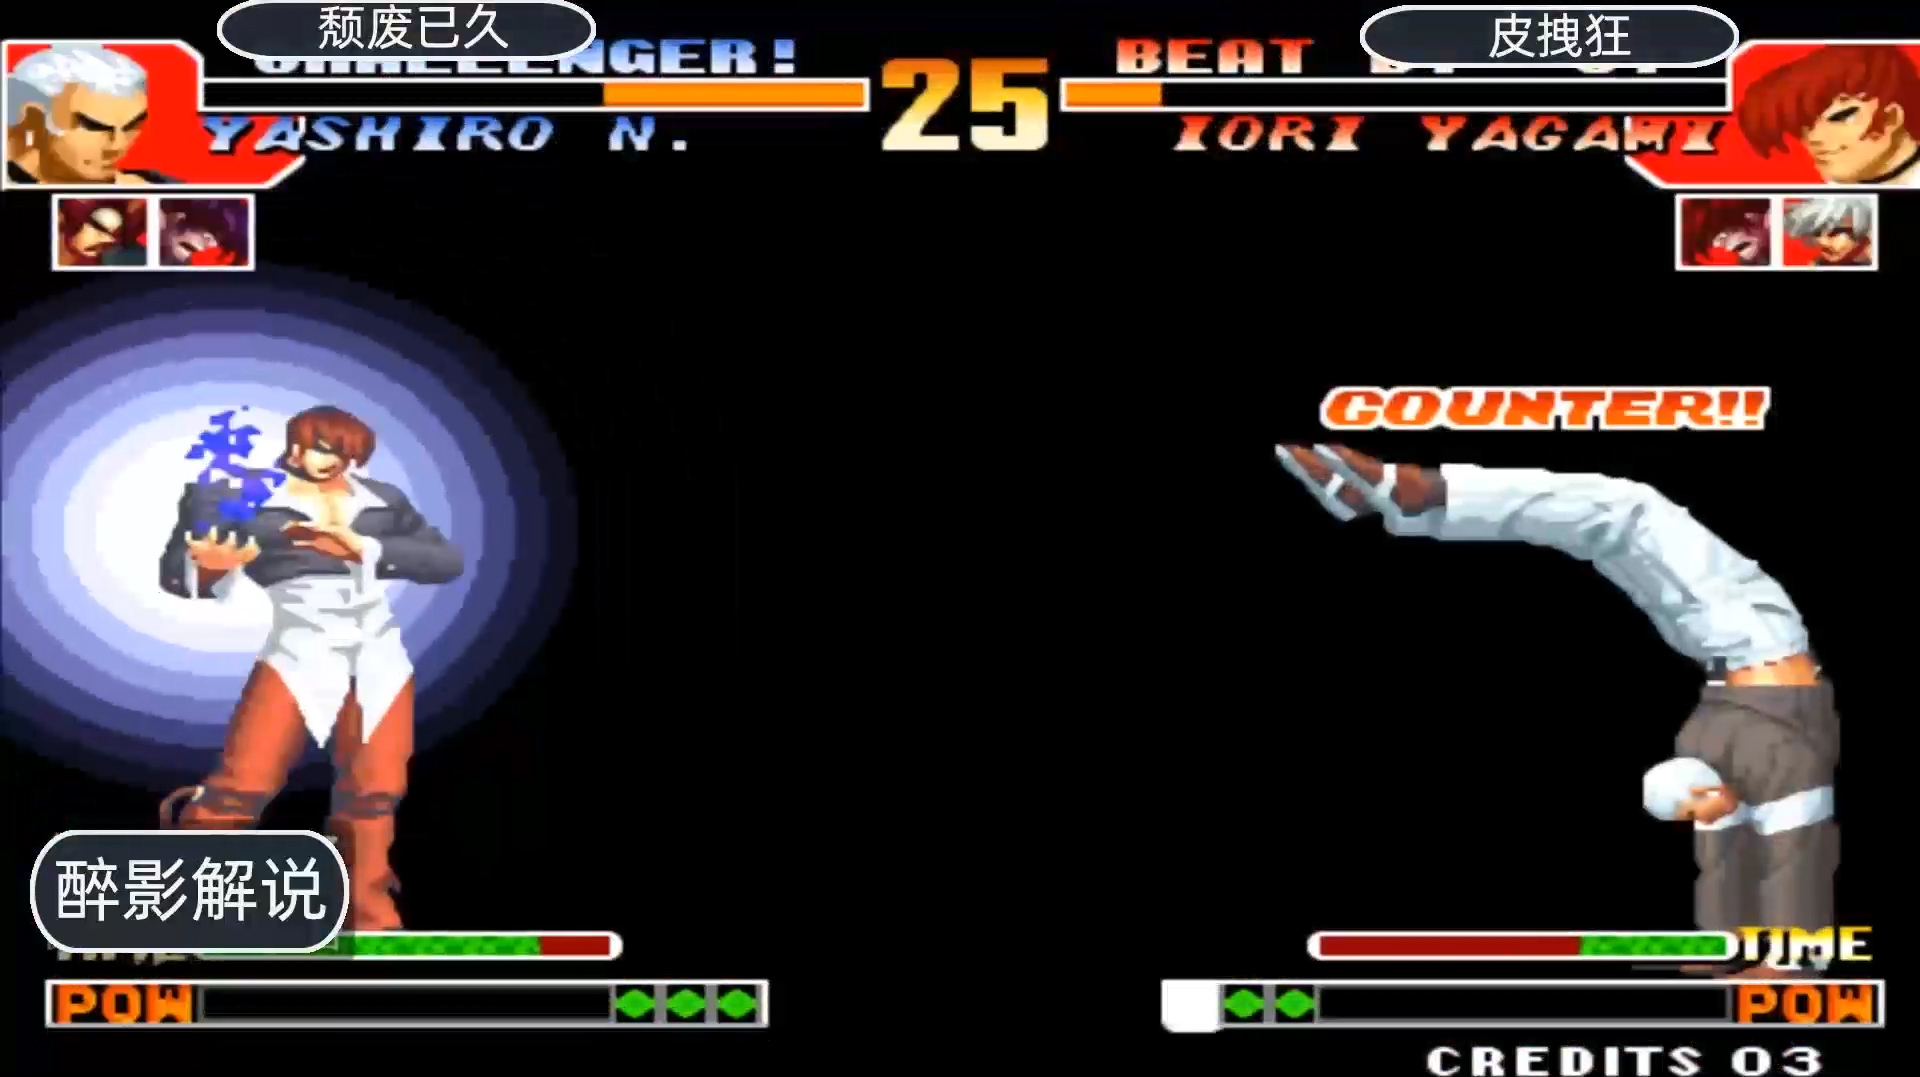 醉影经典游戏视频:《拳皇97》之八神的精彩视频大全(第1期)